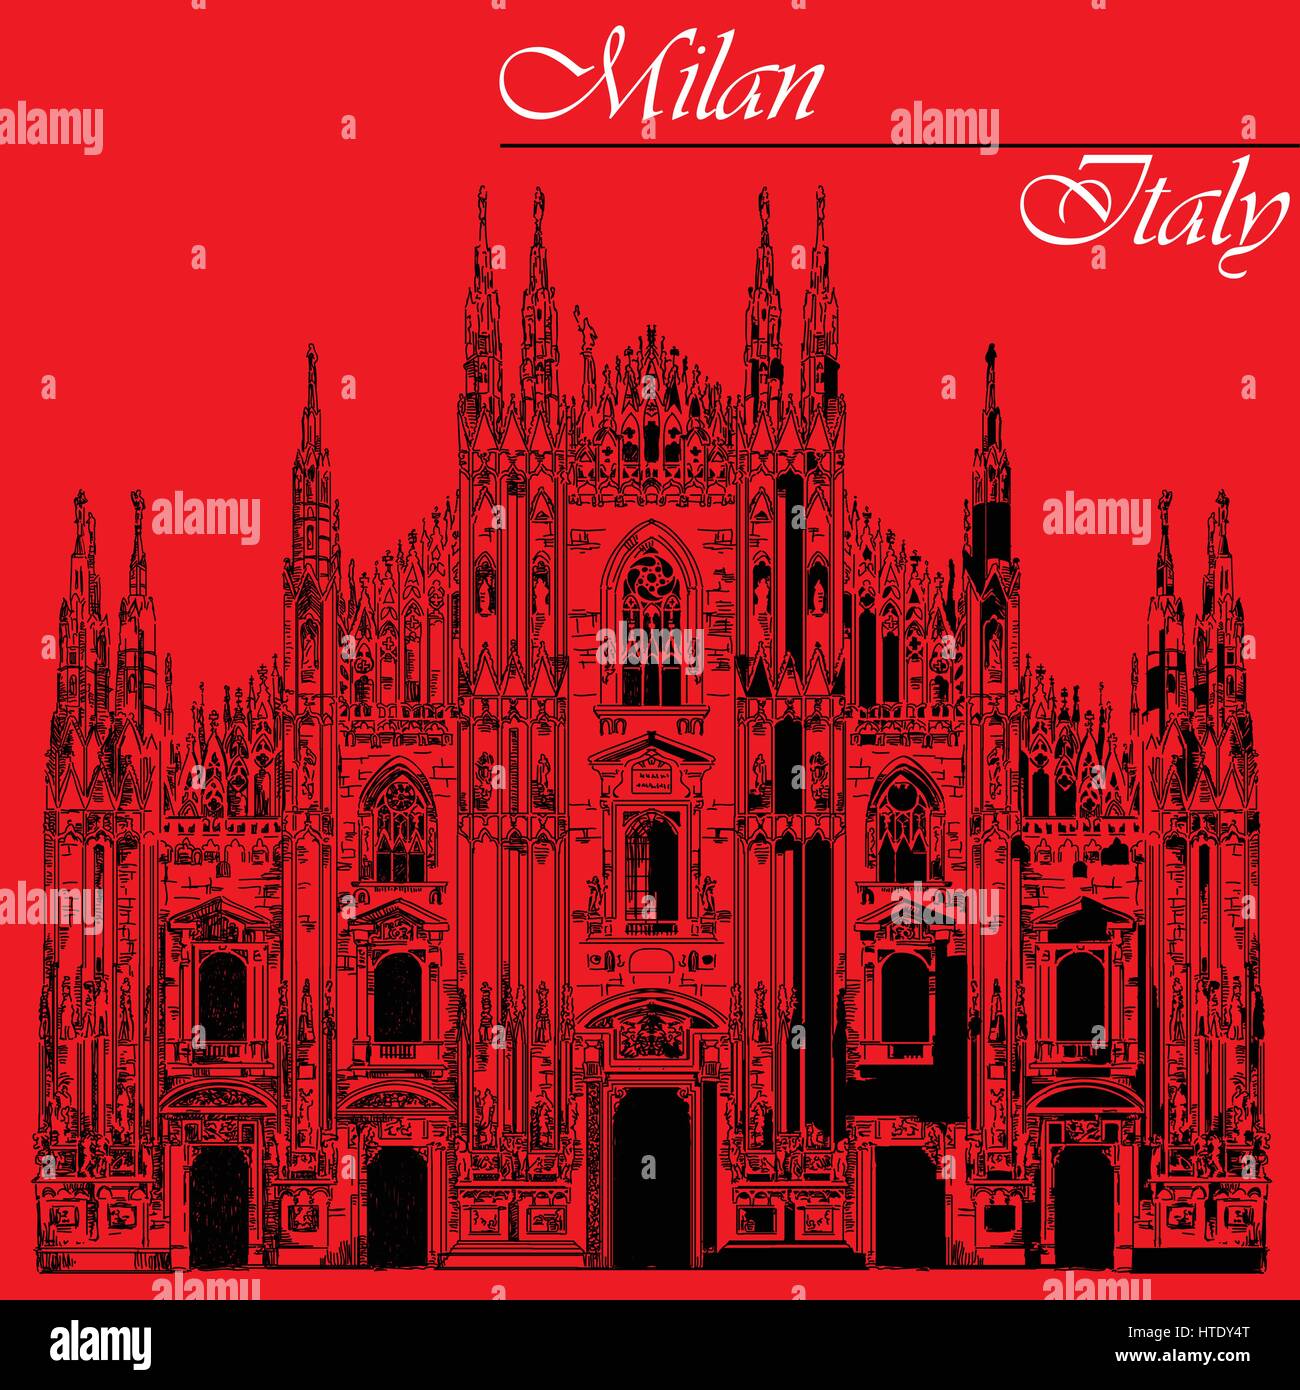 Am berühmten Mailänder Dom in schwarzer Farbe auf Piazza in Mailand, Italien. Grafische Hand Zeichnung Illustration. Vektor isoliert auf einem roten Hintergrund. Stock Vektor